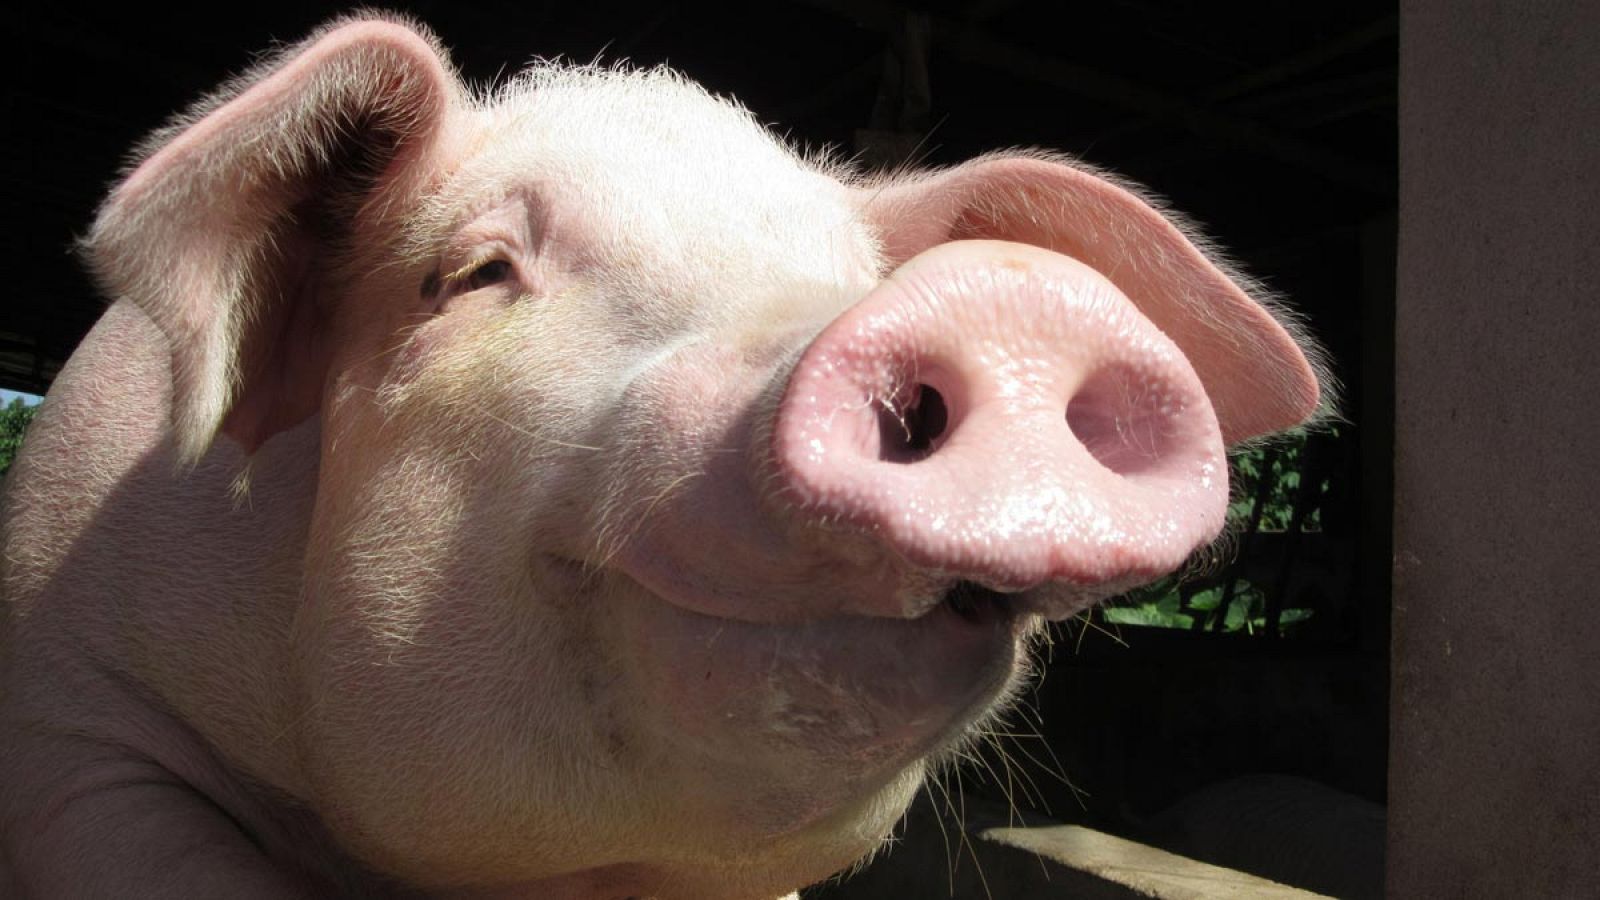 Los científicos llevan años investigando la posibilidad de utilizar órganos de cerdos en seres humanos por la compatibilidad entre los organismos de ambos.